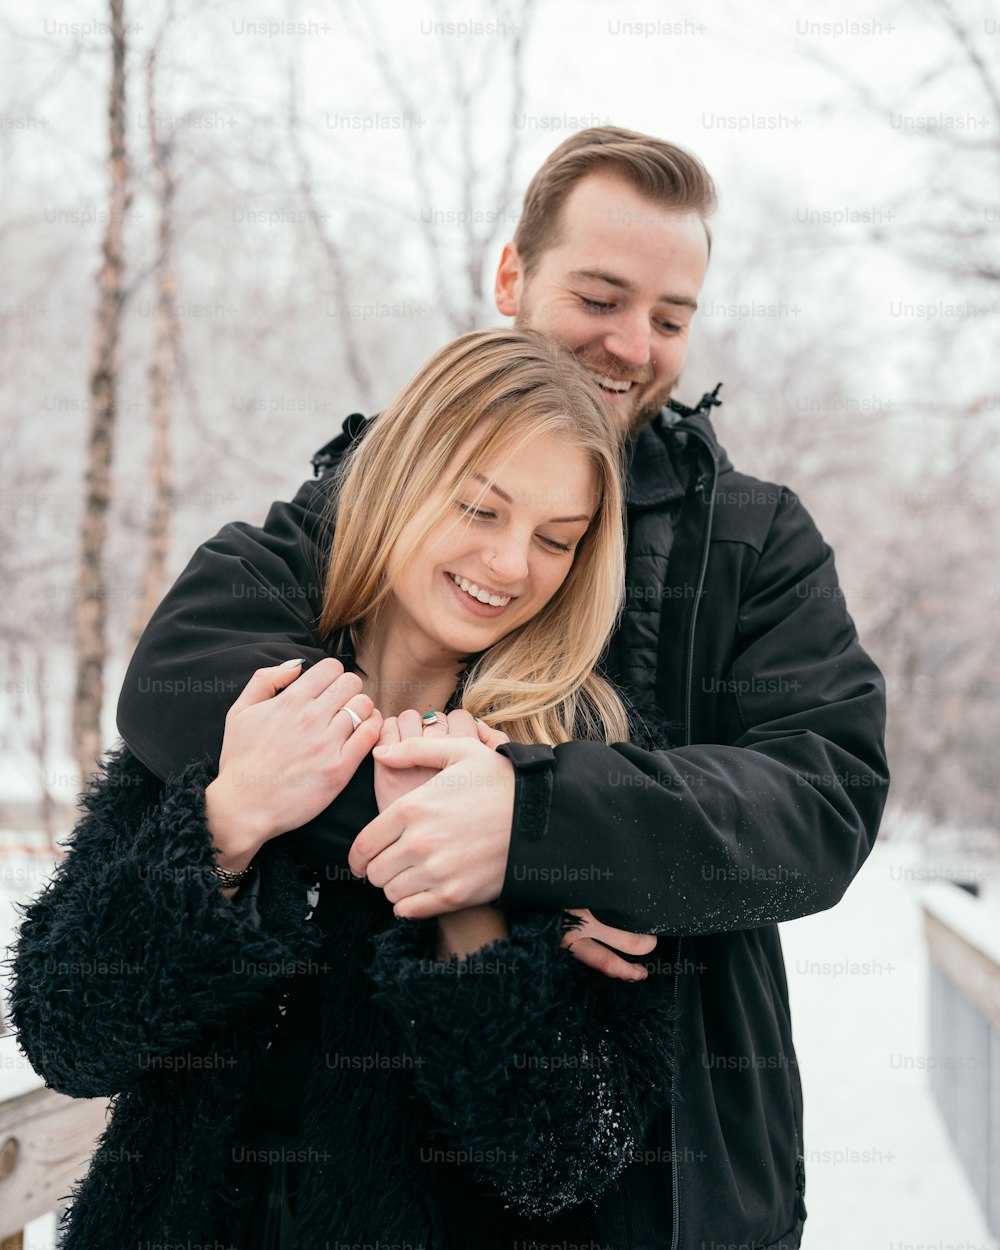 Un hombre y una mujer se abrazan en la nieve